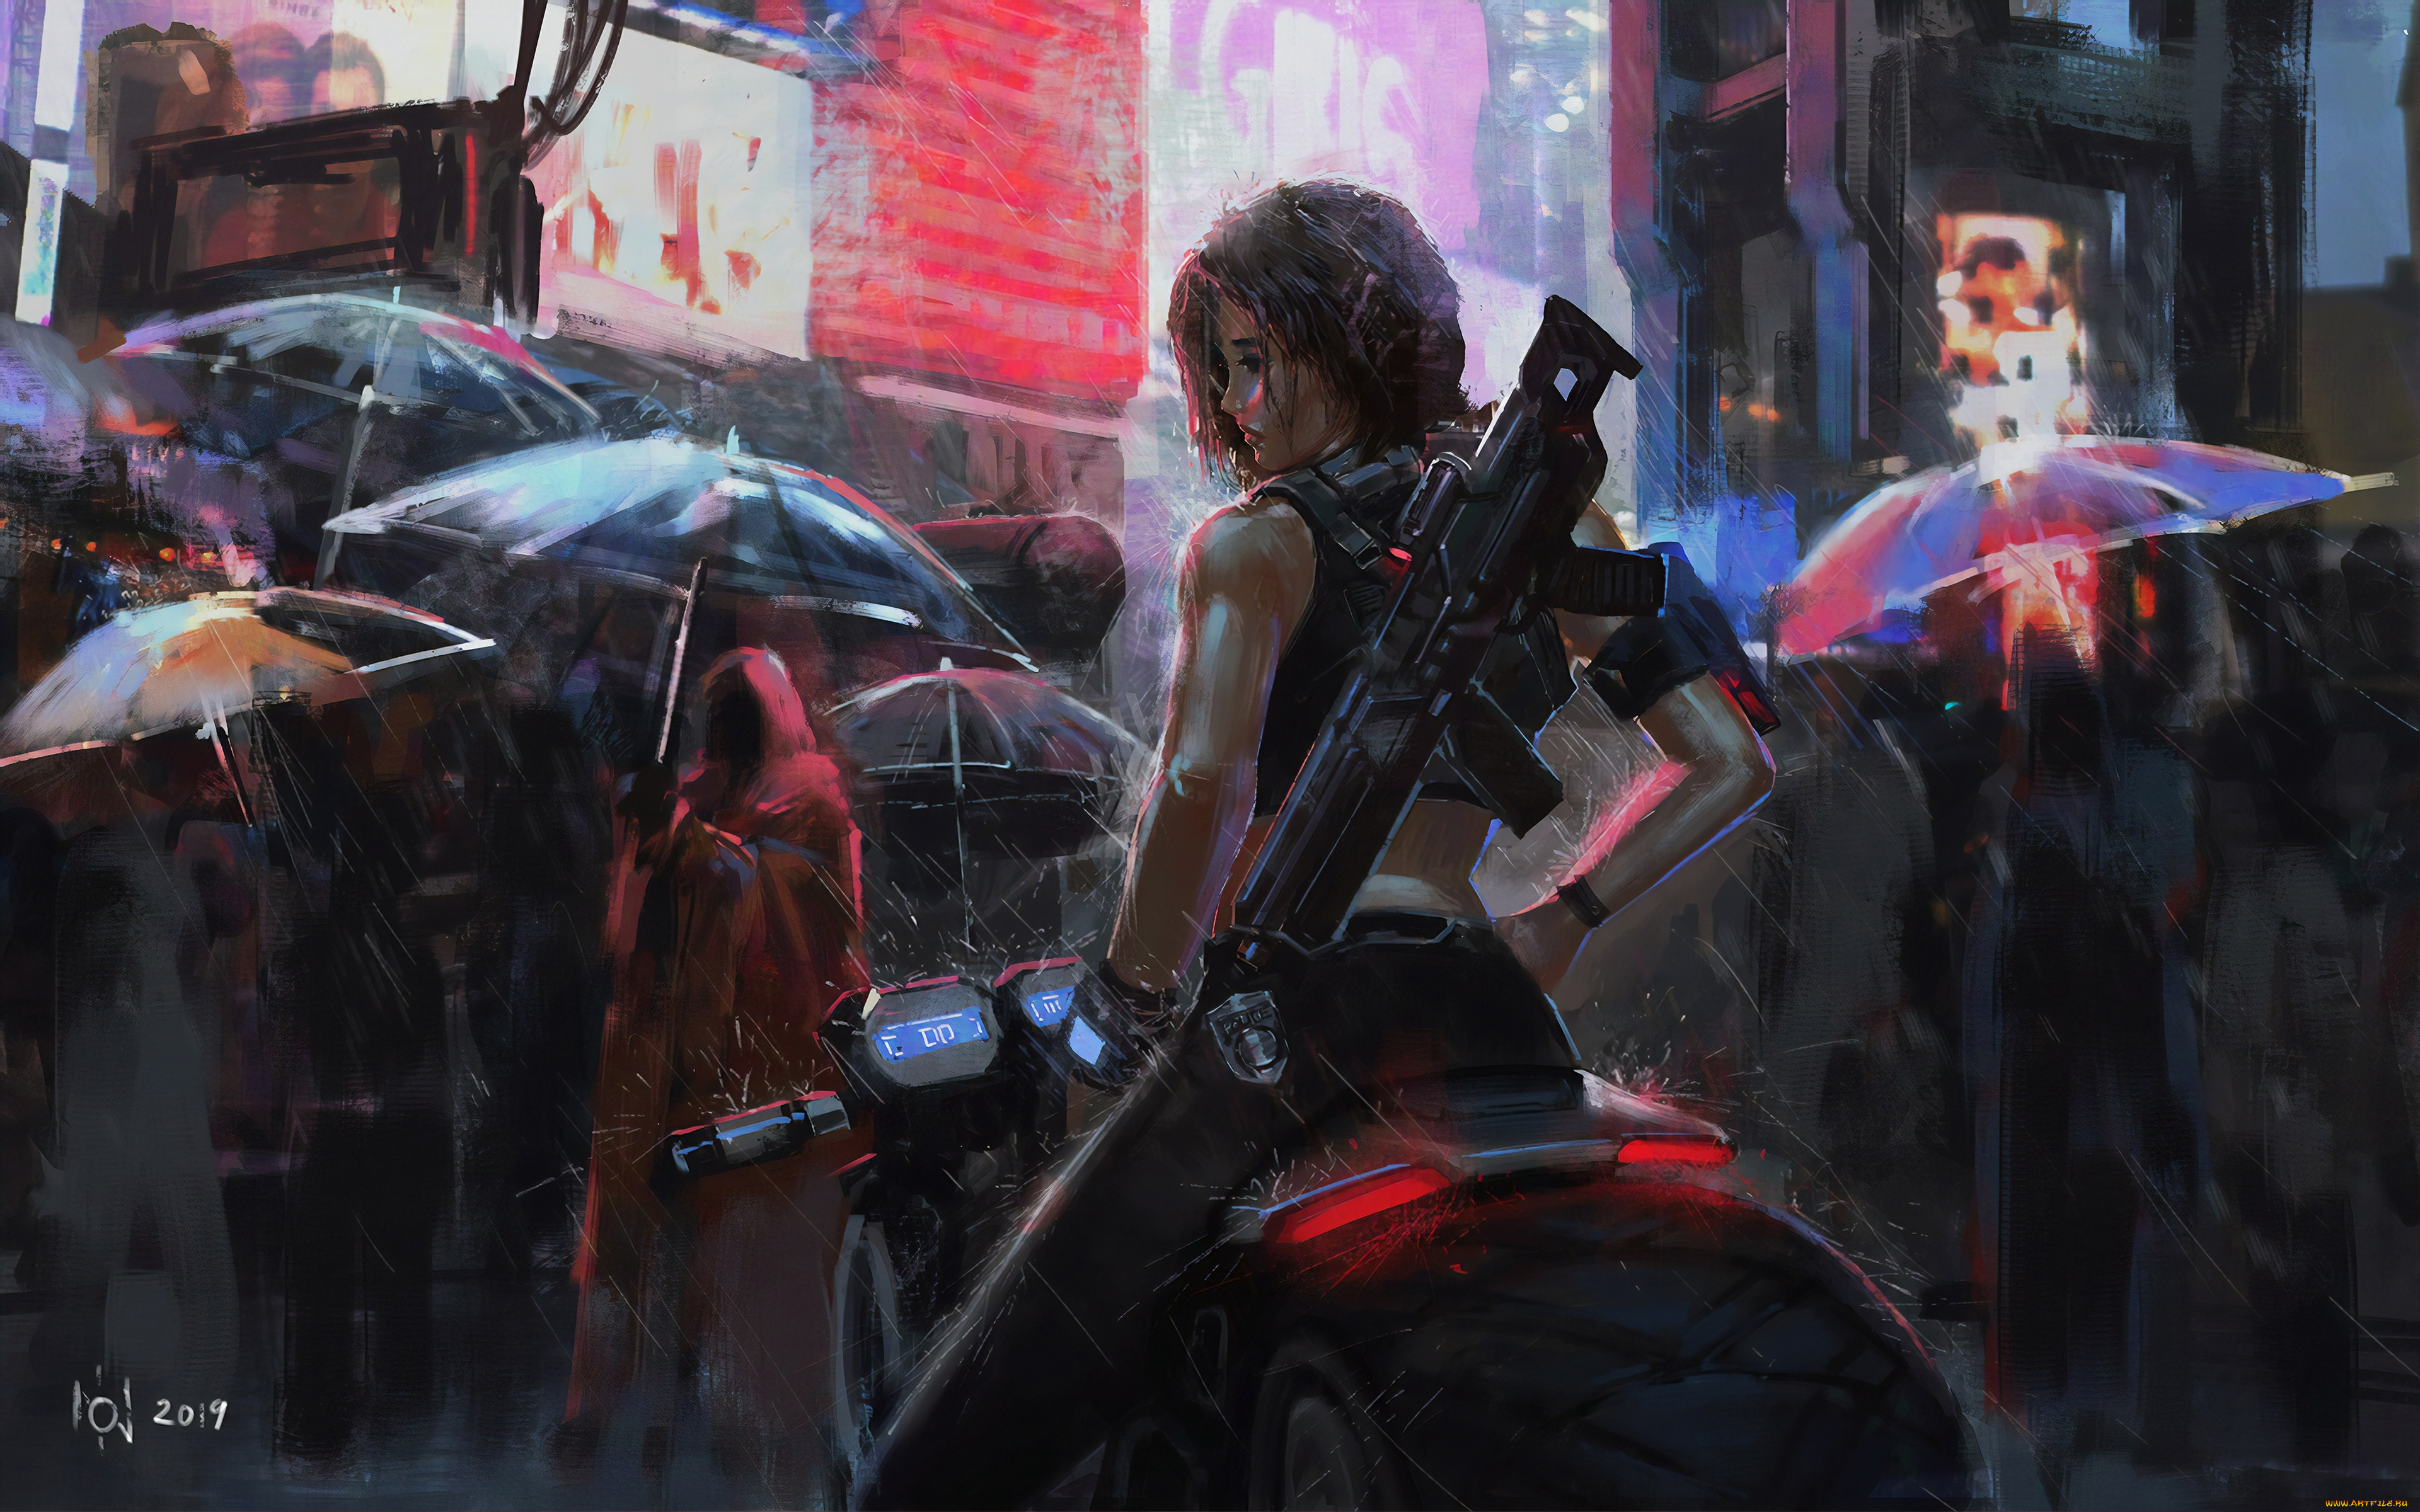 рисованное, комиксы, цифровое, искусство, зонтик, дождь, футуризм, мотоцикл, город, женщины, солдат, азиаты, оружие